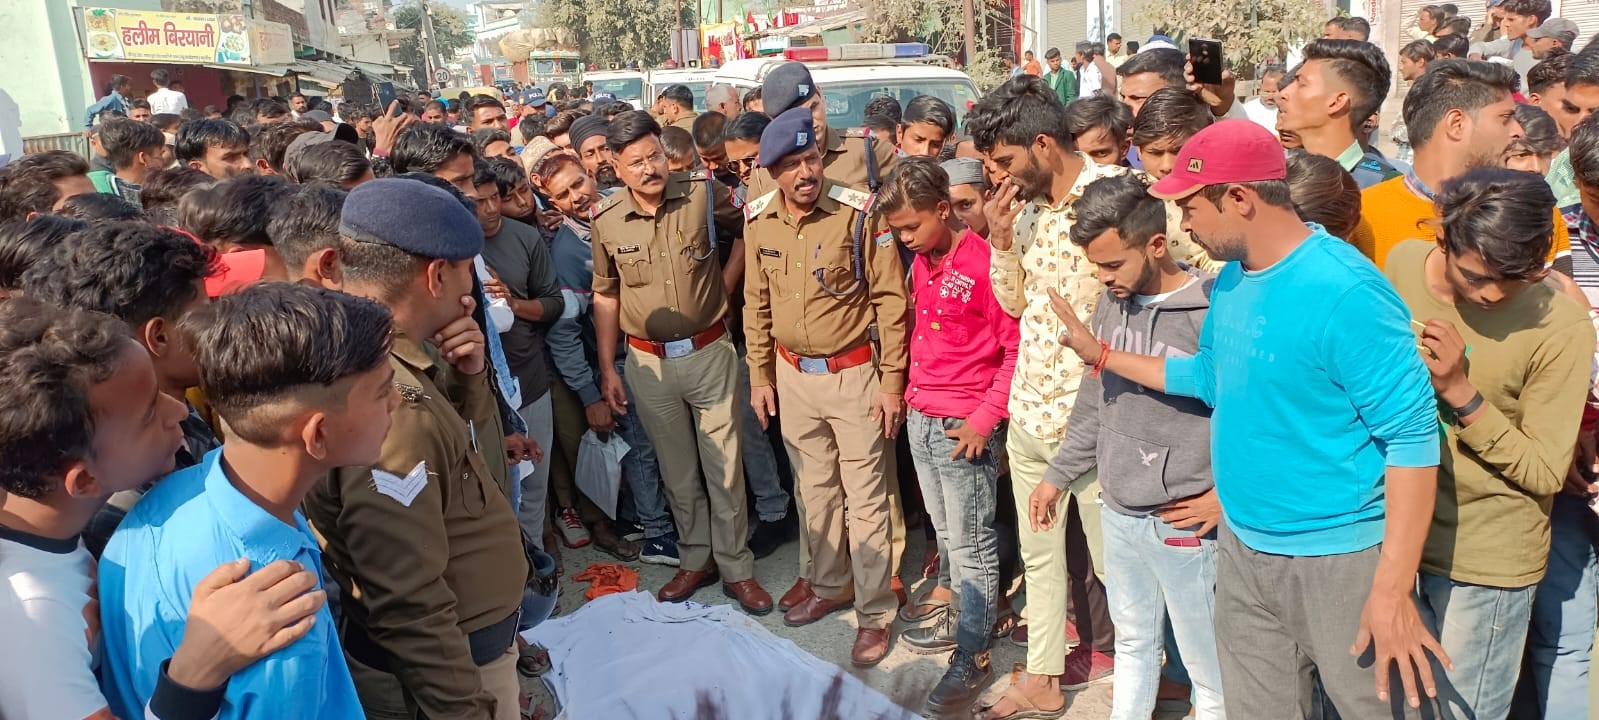 काशीपुर: डंपर की चपेट में आने से महिला की मौत, परिजनों शव रोड पर रख दिया धरना